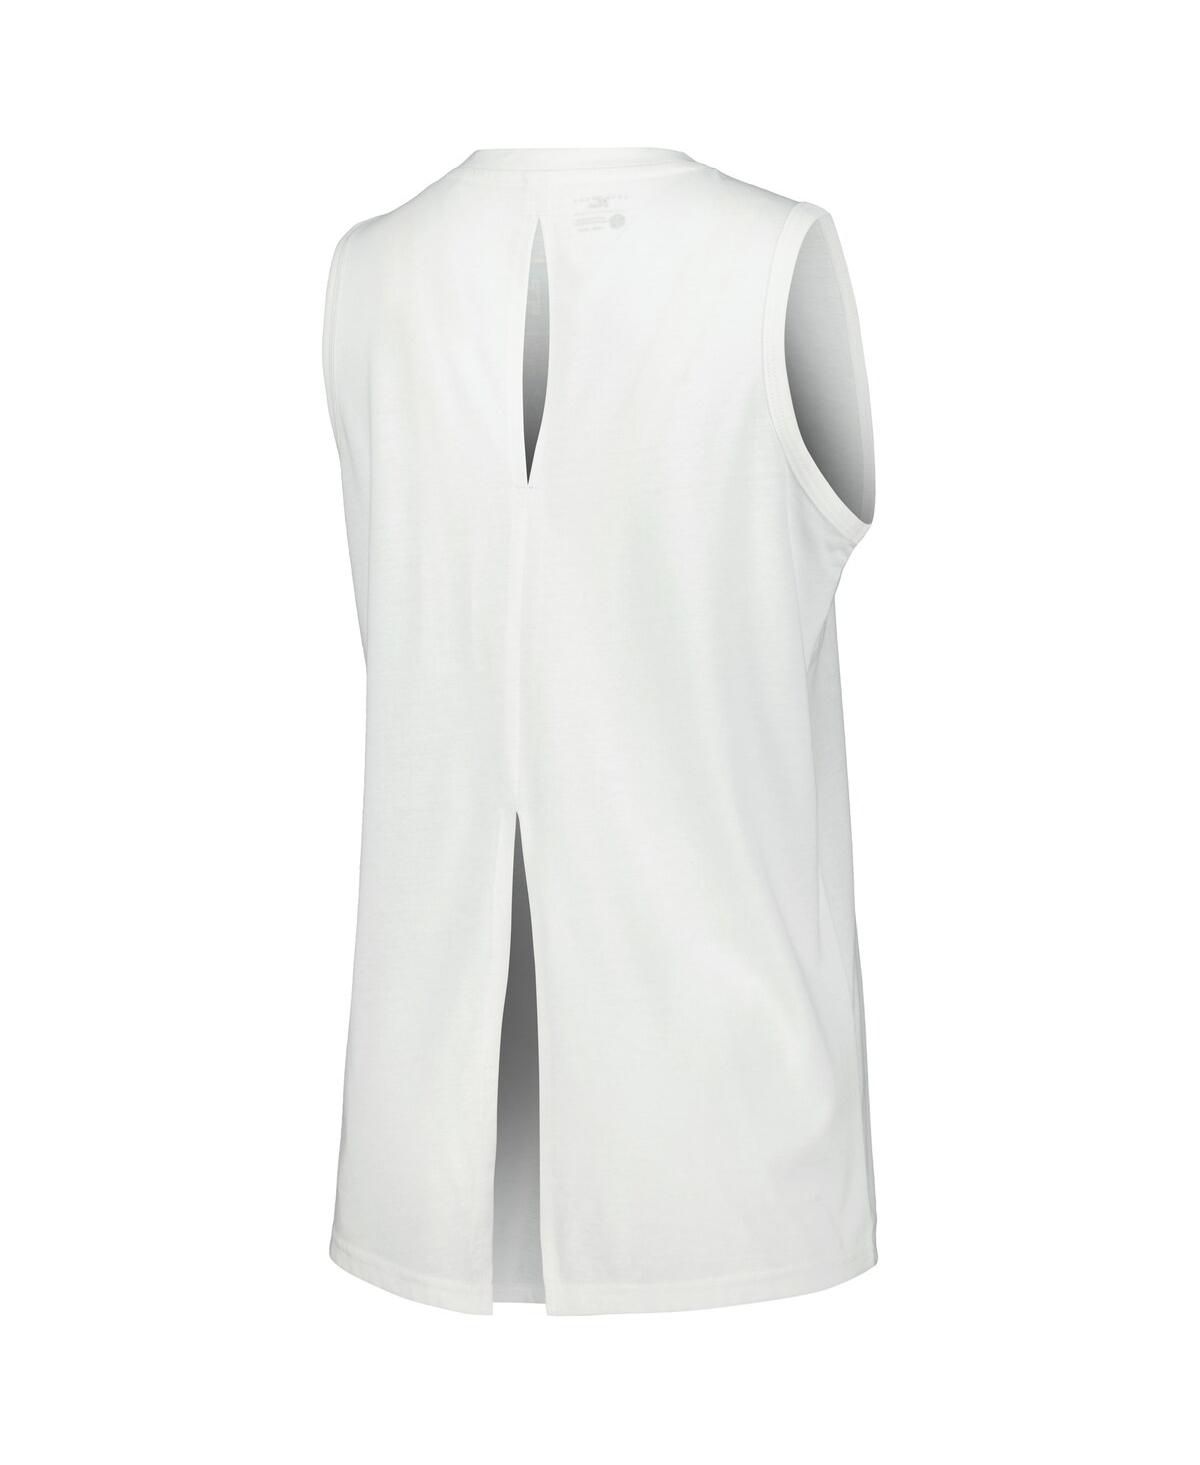 Shop Levelwear Women's White New York Knicks Paisley Peekaboo Tank Top